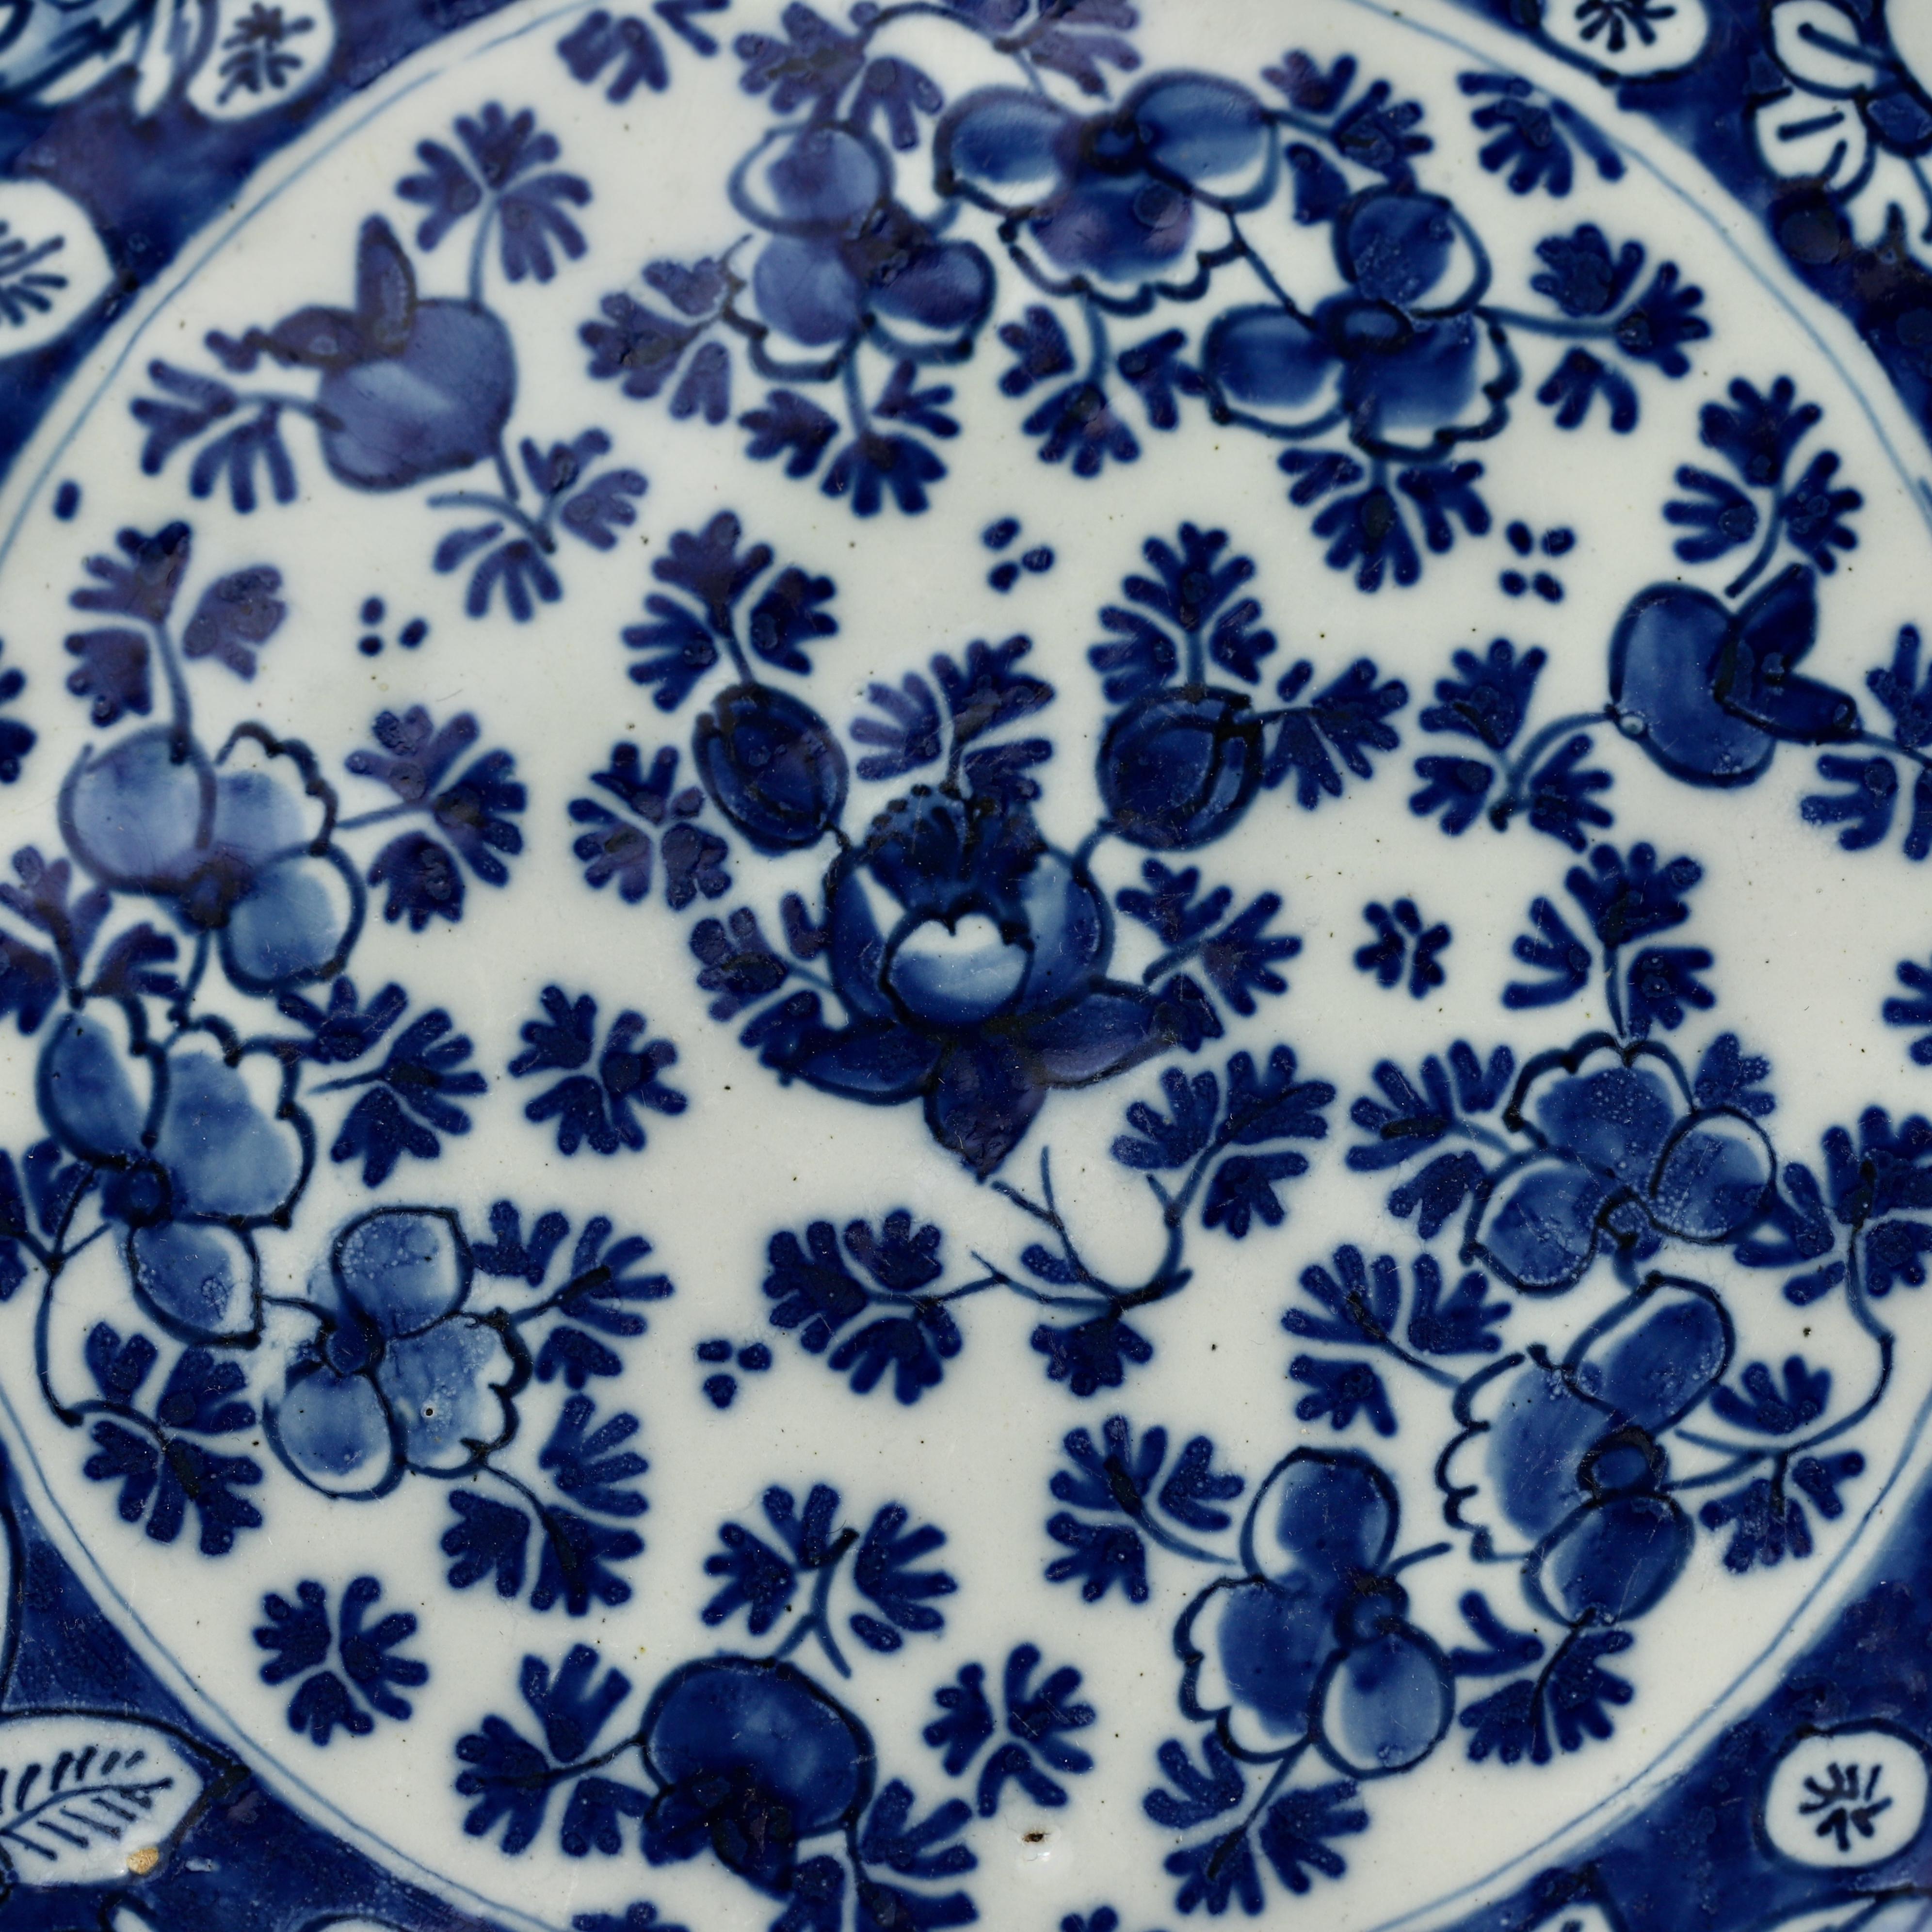 Ville : Delft
Atelier : Pot De Metaale
Propriétaire : Lambertus van Eenhoorn
Date : 1691 - 1724

Une fine et rare assiette bleu et blanc avec un motif floral.
Rose au centre entourée de cinq cartouches également fleuris.
Marqué : LVE 4 0 HC